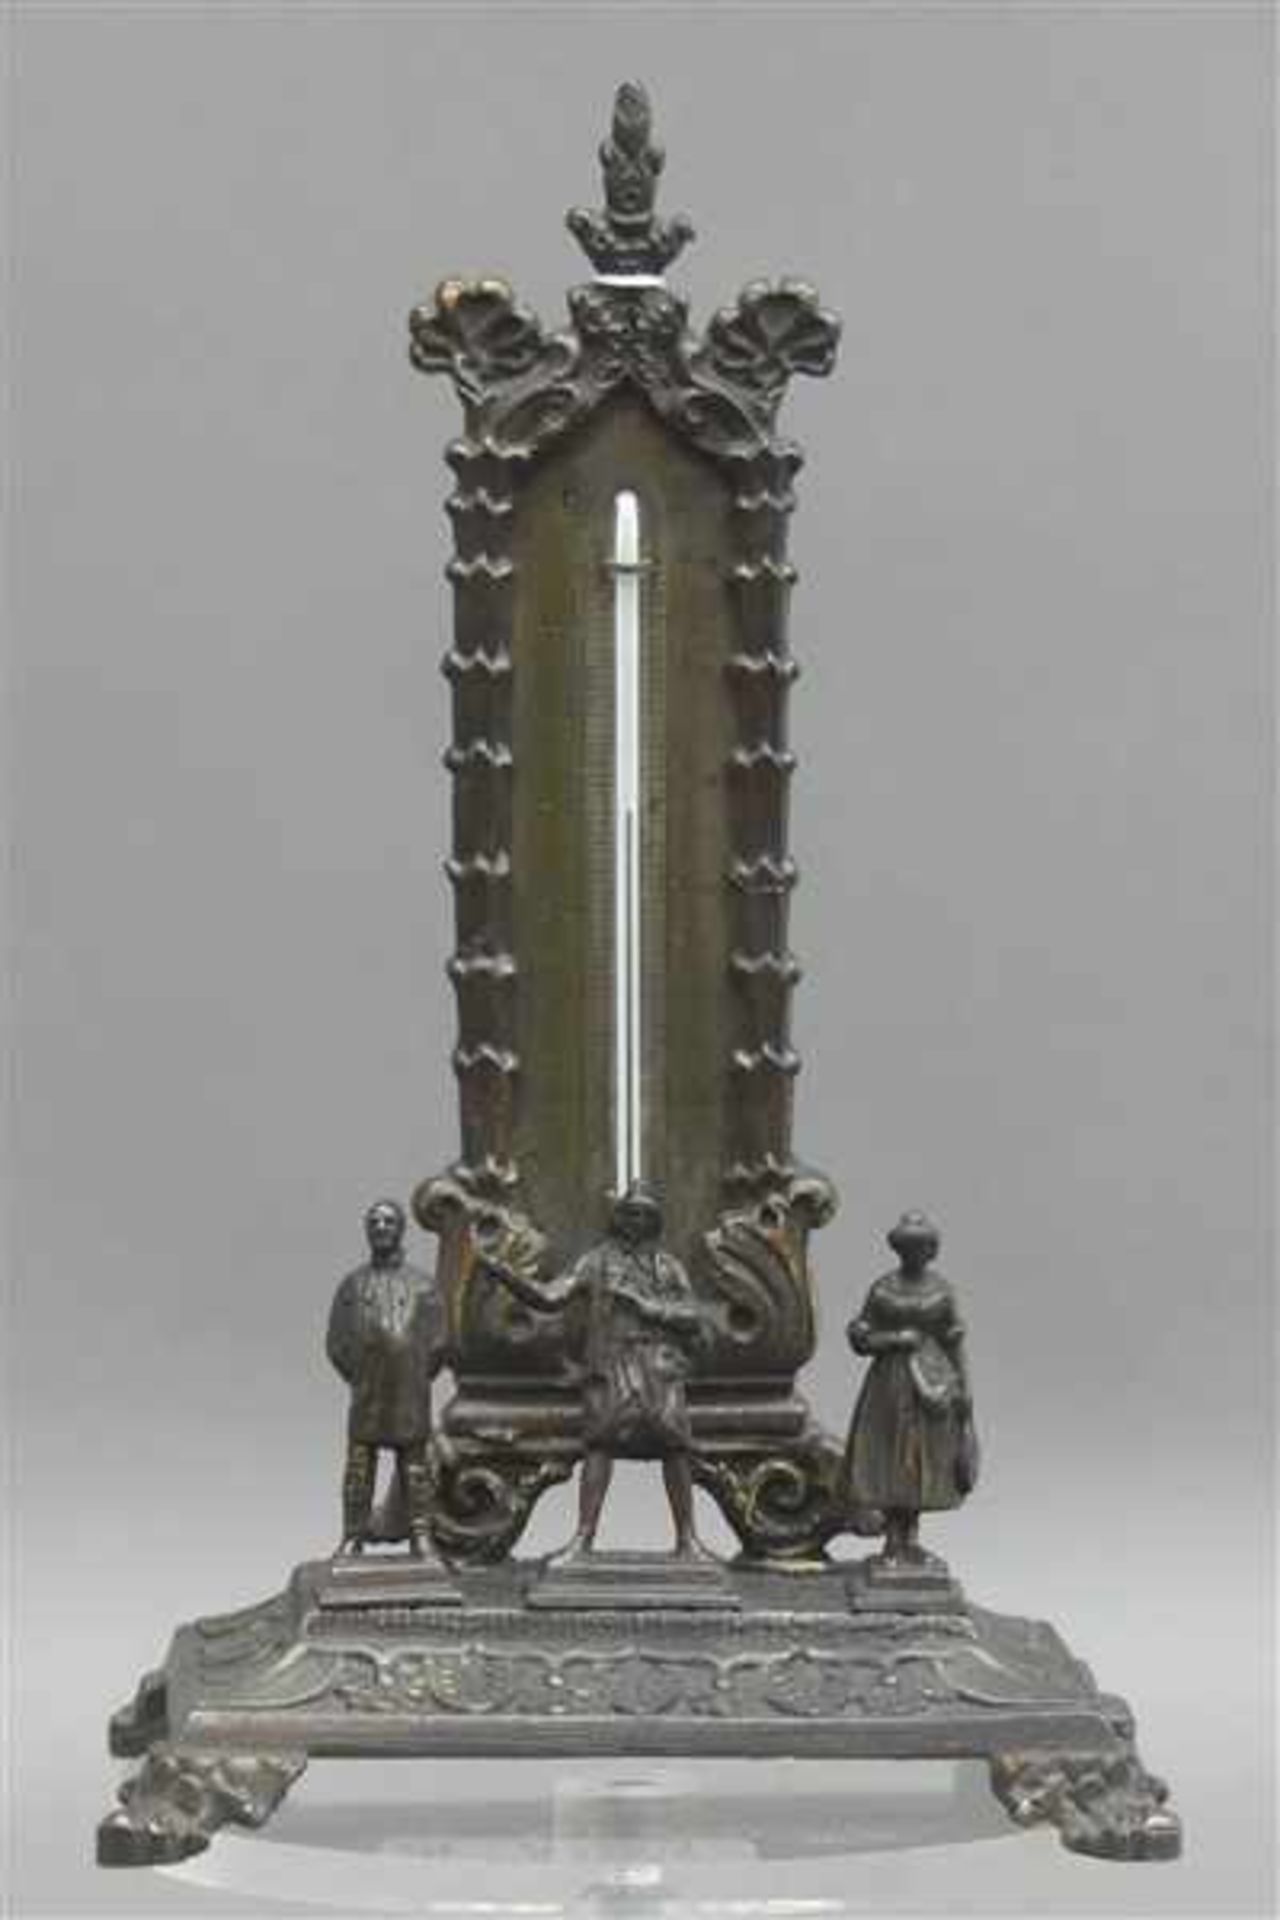 ThermometerMetall, bronziert, Reliefdekor, 3 kleine Figürchen, auf Sockel, h 16,5 cm,- - -20.00 %